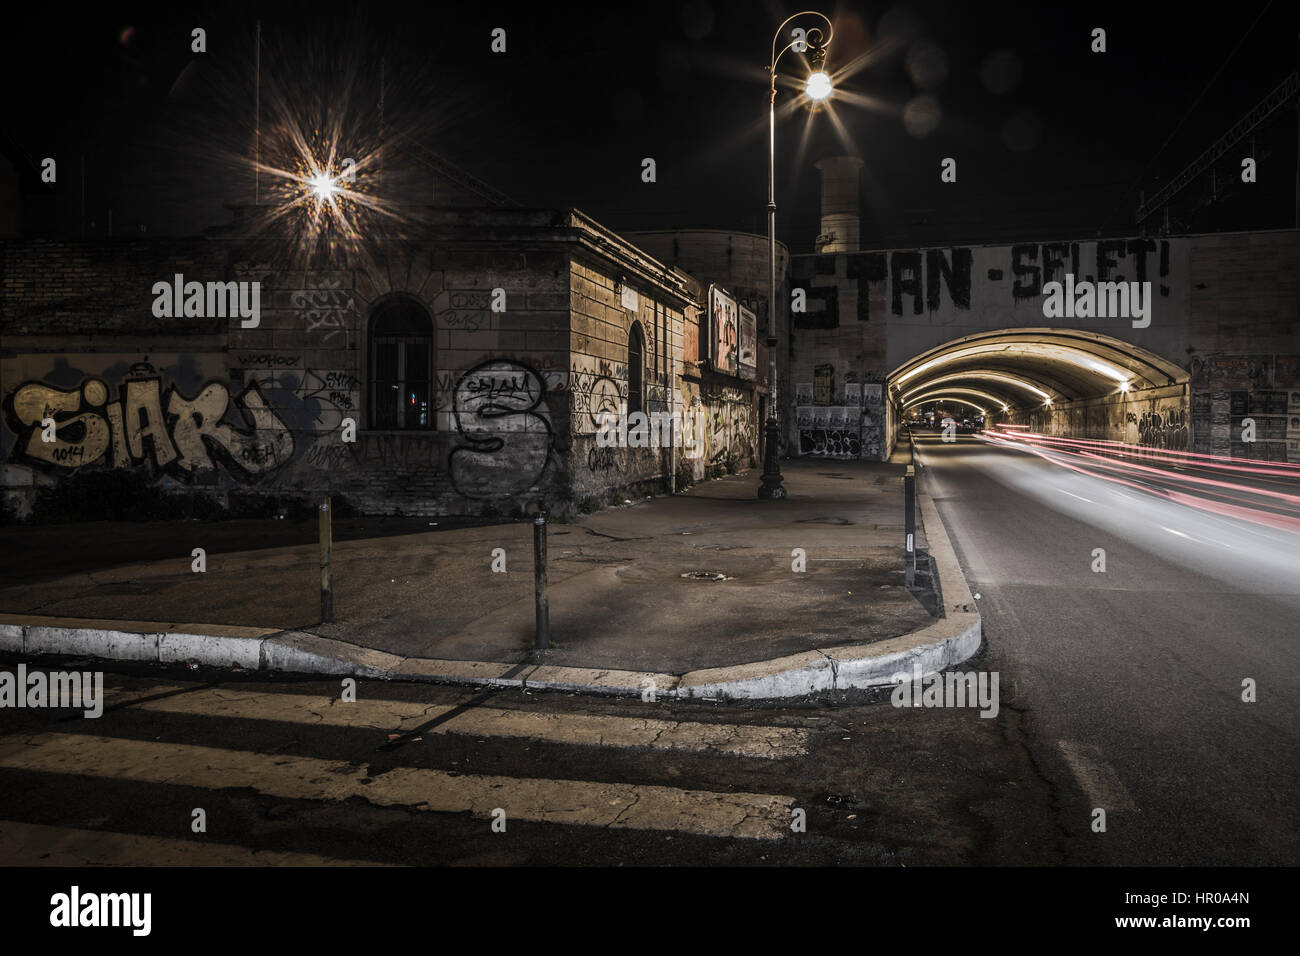 Urban scene in Rome at night street corner Stock Photo